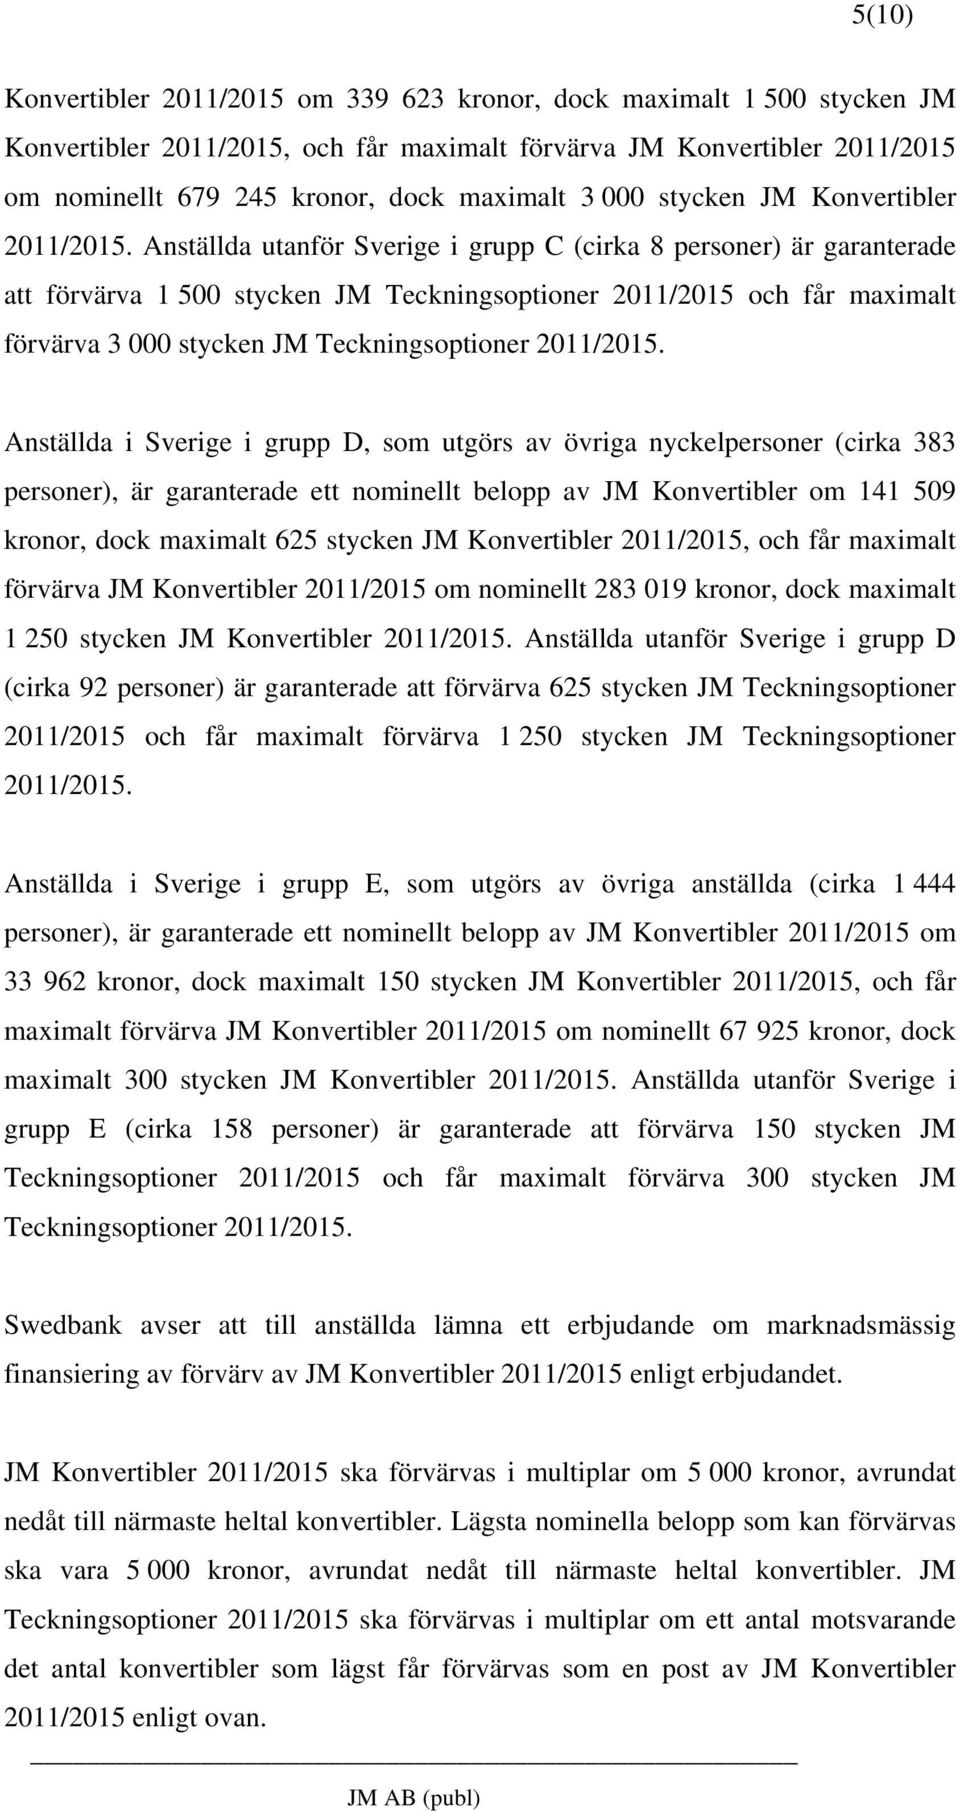 Anställda utanför Sverige i grupp C (cirka 8 personer) är garanterade att förvärva 1 500 stycken JM Teckningsoptioner 2011/2015 och får maximalt förvärva 3 000 stycken JM Teckningsoptioner 2011/2015.